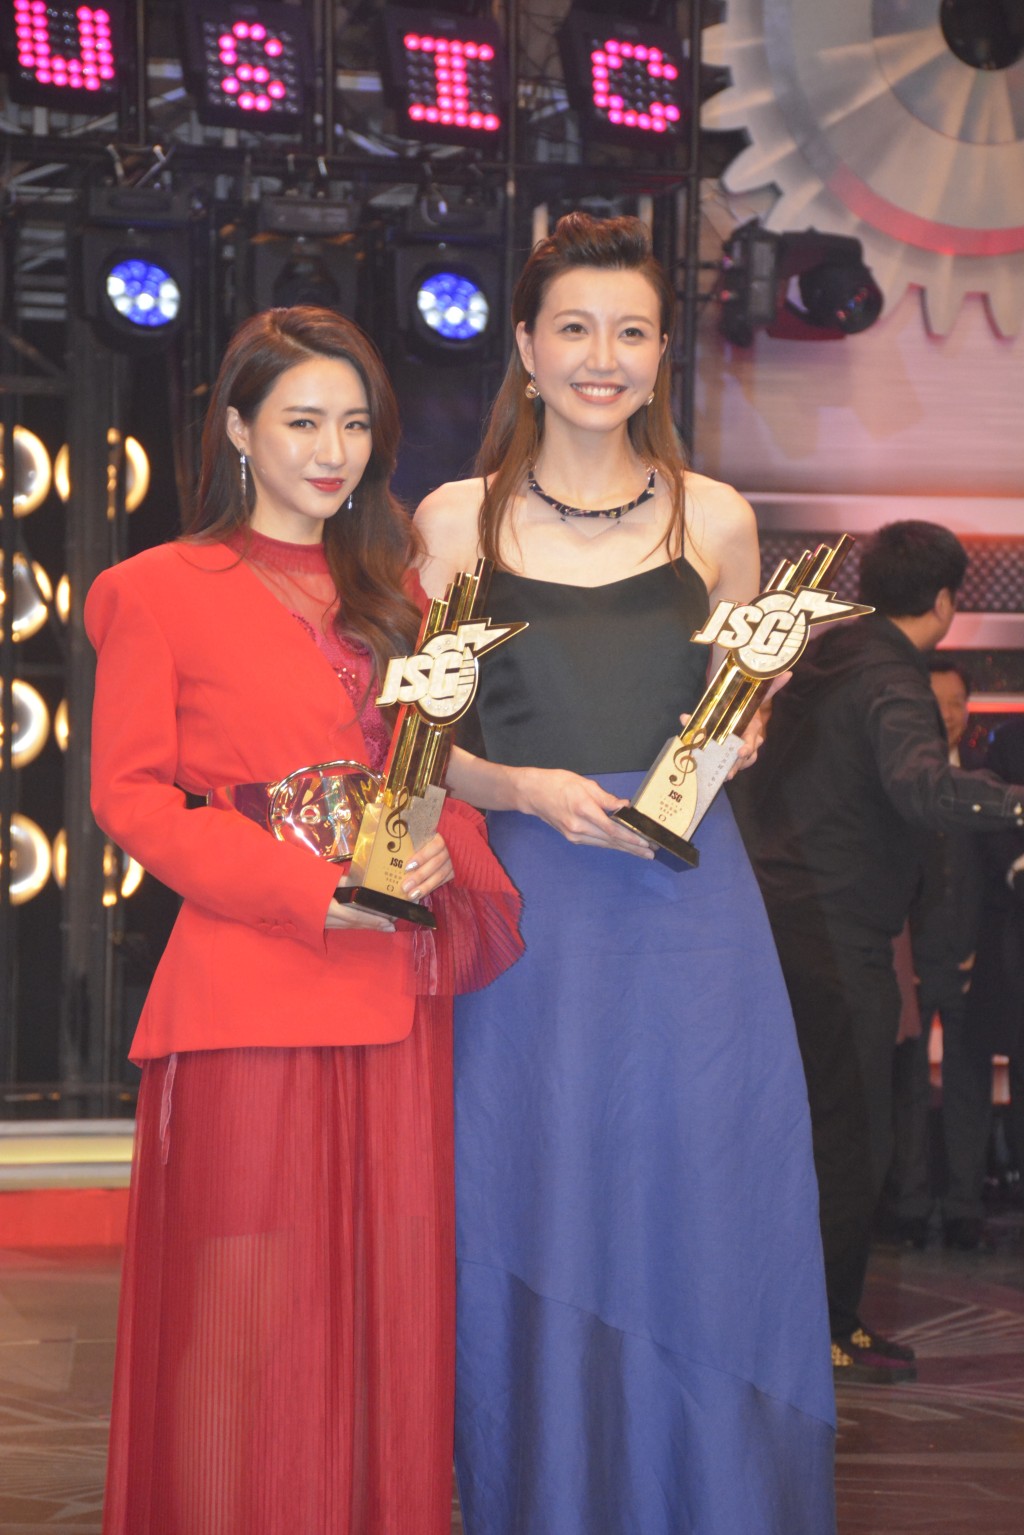 菊梓桥在《2018年度劲歌金曲颁奖典礼》获得「最受欢迎女歌星」奖。